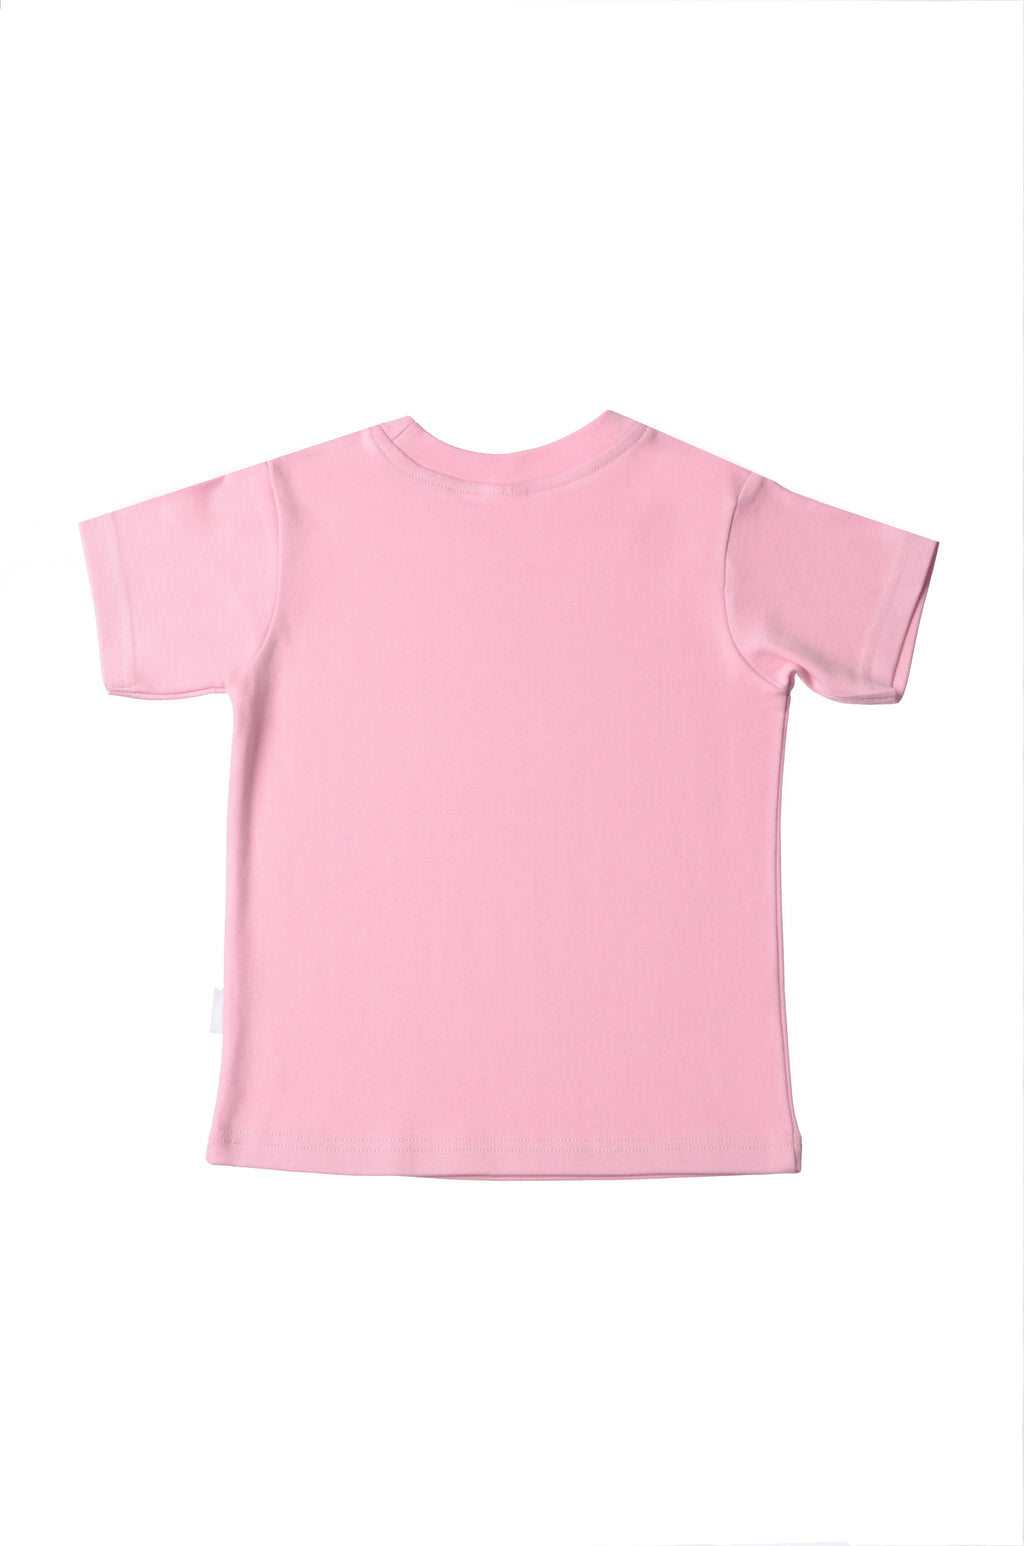 Rosa T-Shirt aus Bio Baumwolle mit Blümchen Druck und dem Wording "grow little one"